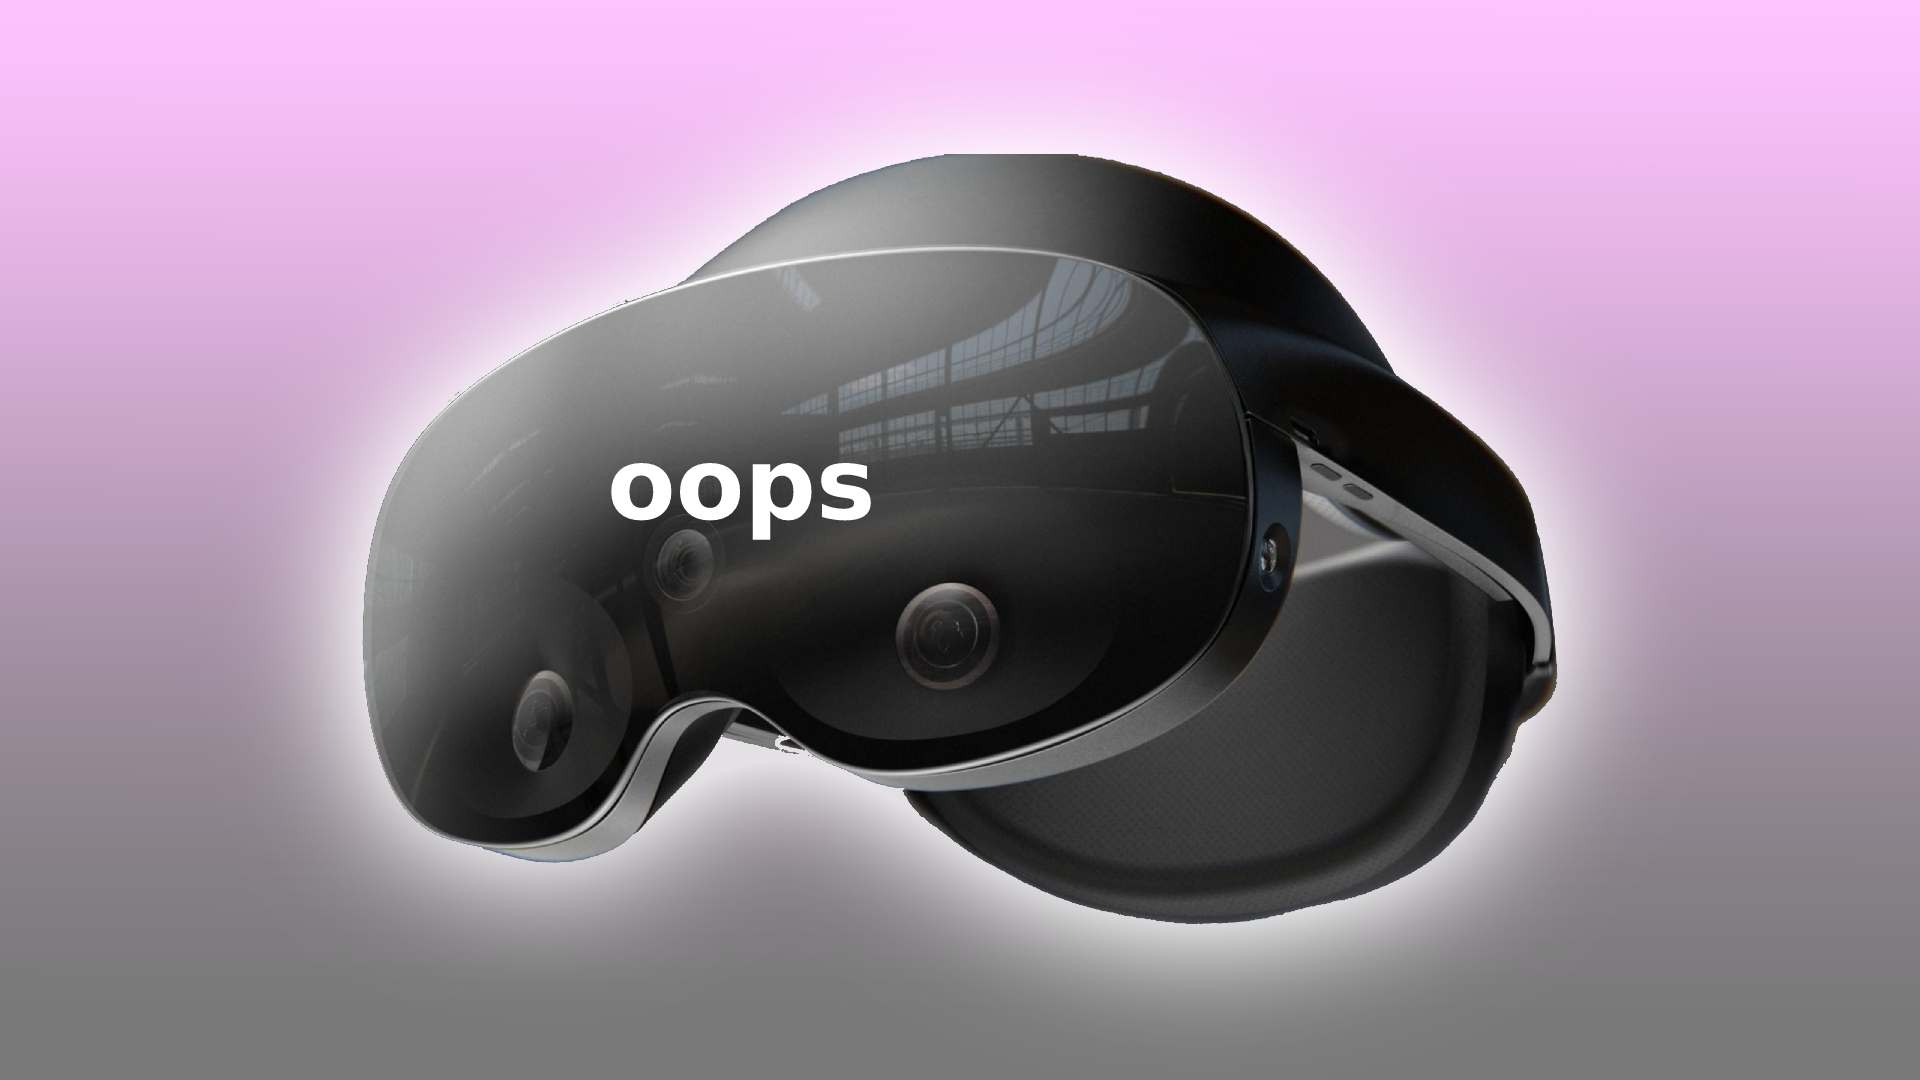 Oculus Quest 2 successor struts its stuff in hotel video leak